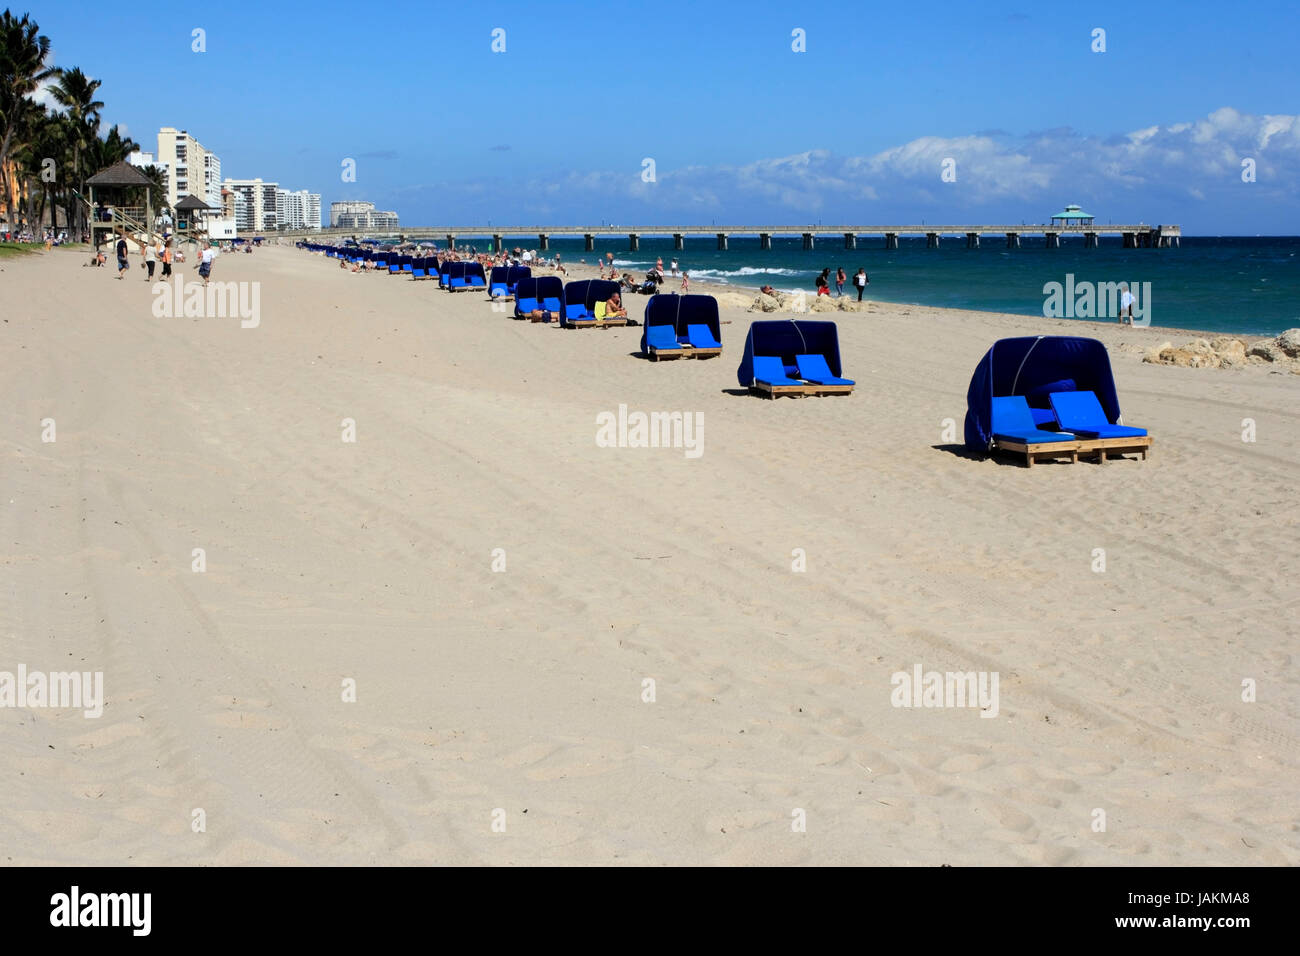 DEERFIELD Beach, FLORIDE - 1 février : Les gens profiter de cette belle plage située au nord de Fort Lauderdale une jetée en arrière-plan le 1 février 2013 dans la région de Deerfield Beach, en Floride. Banque D'Images